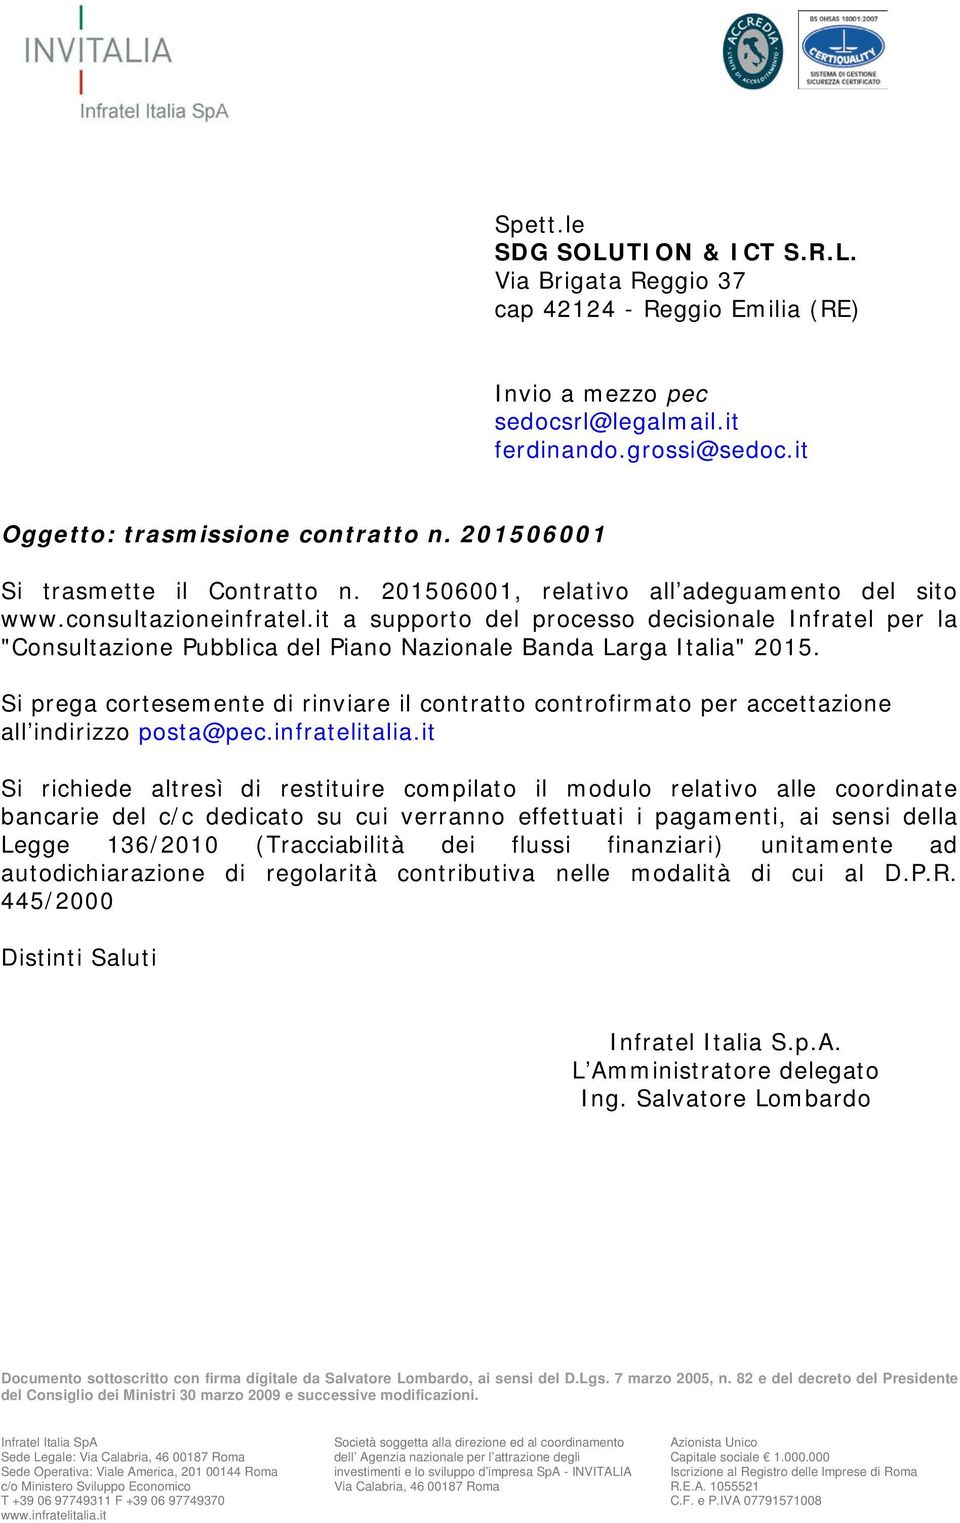 it a supporto del processo decisionale Infratel per la "Consultazione Pubblica del Piano Nazionale Banda Larga Italia" 2015.